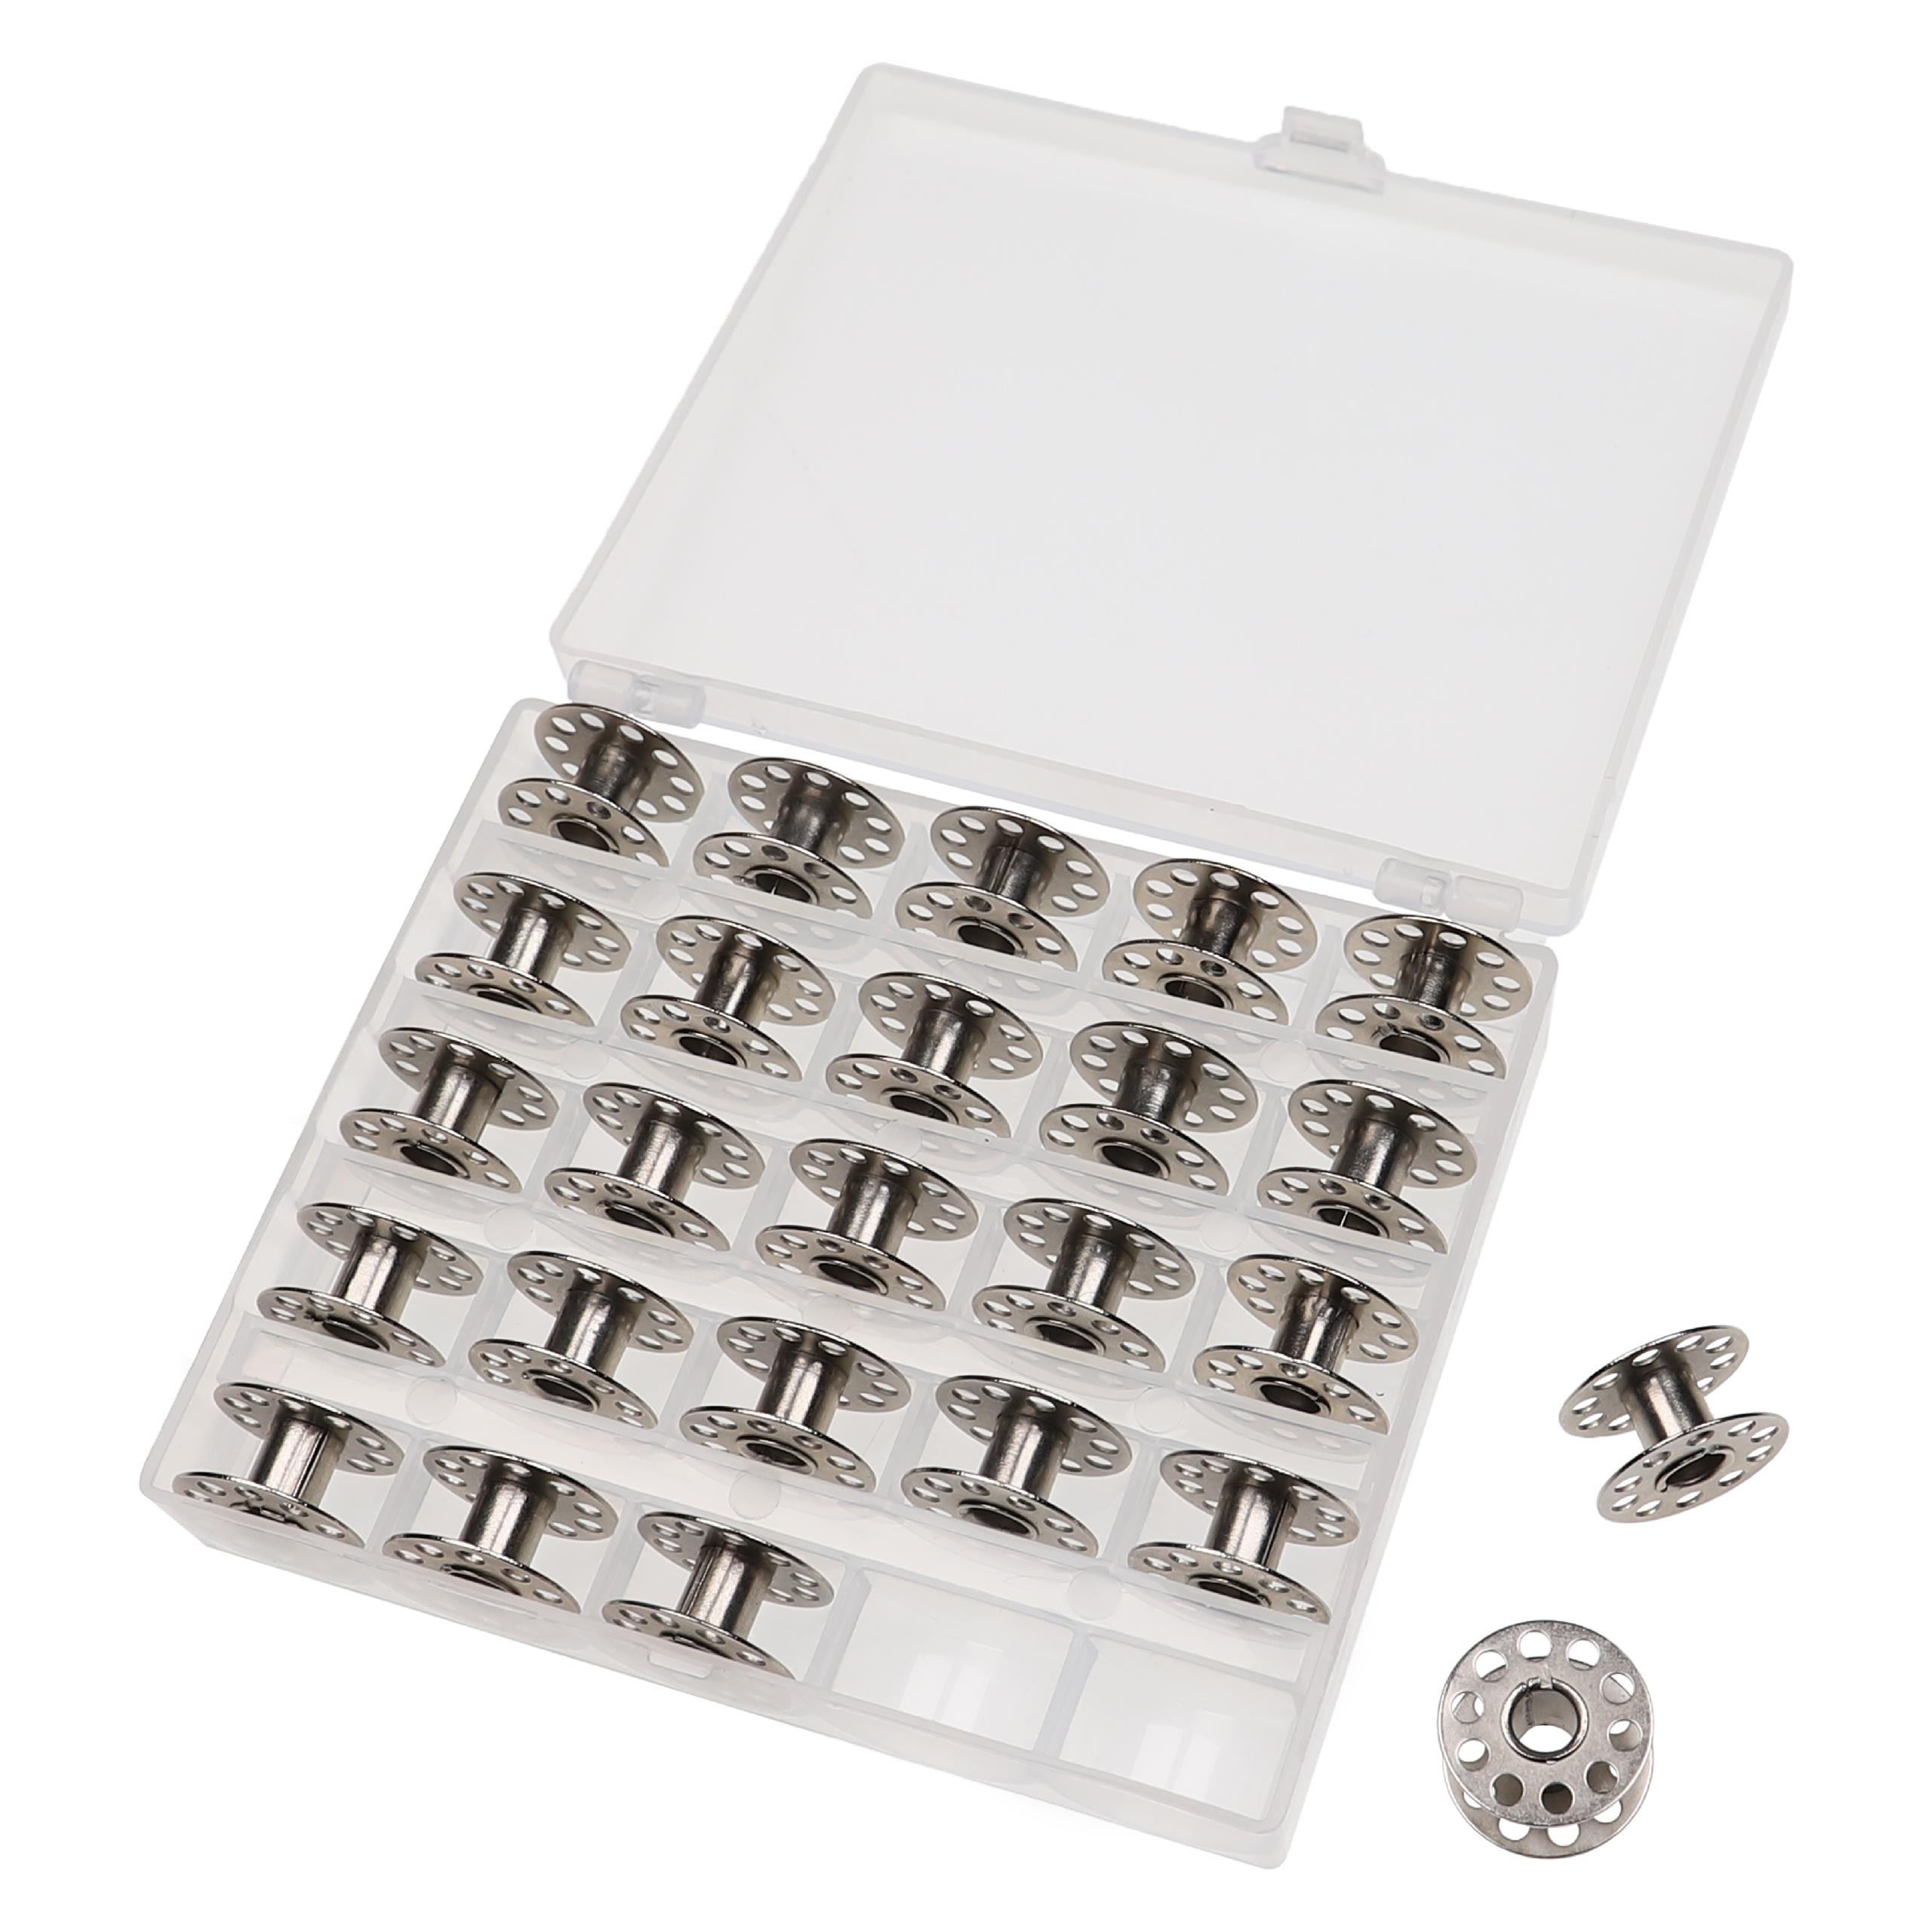 26x Caja almacenaje para bobinas de máquinas de coser Singer, etc. - incl. bobinas hilo, metal